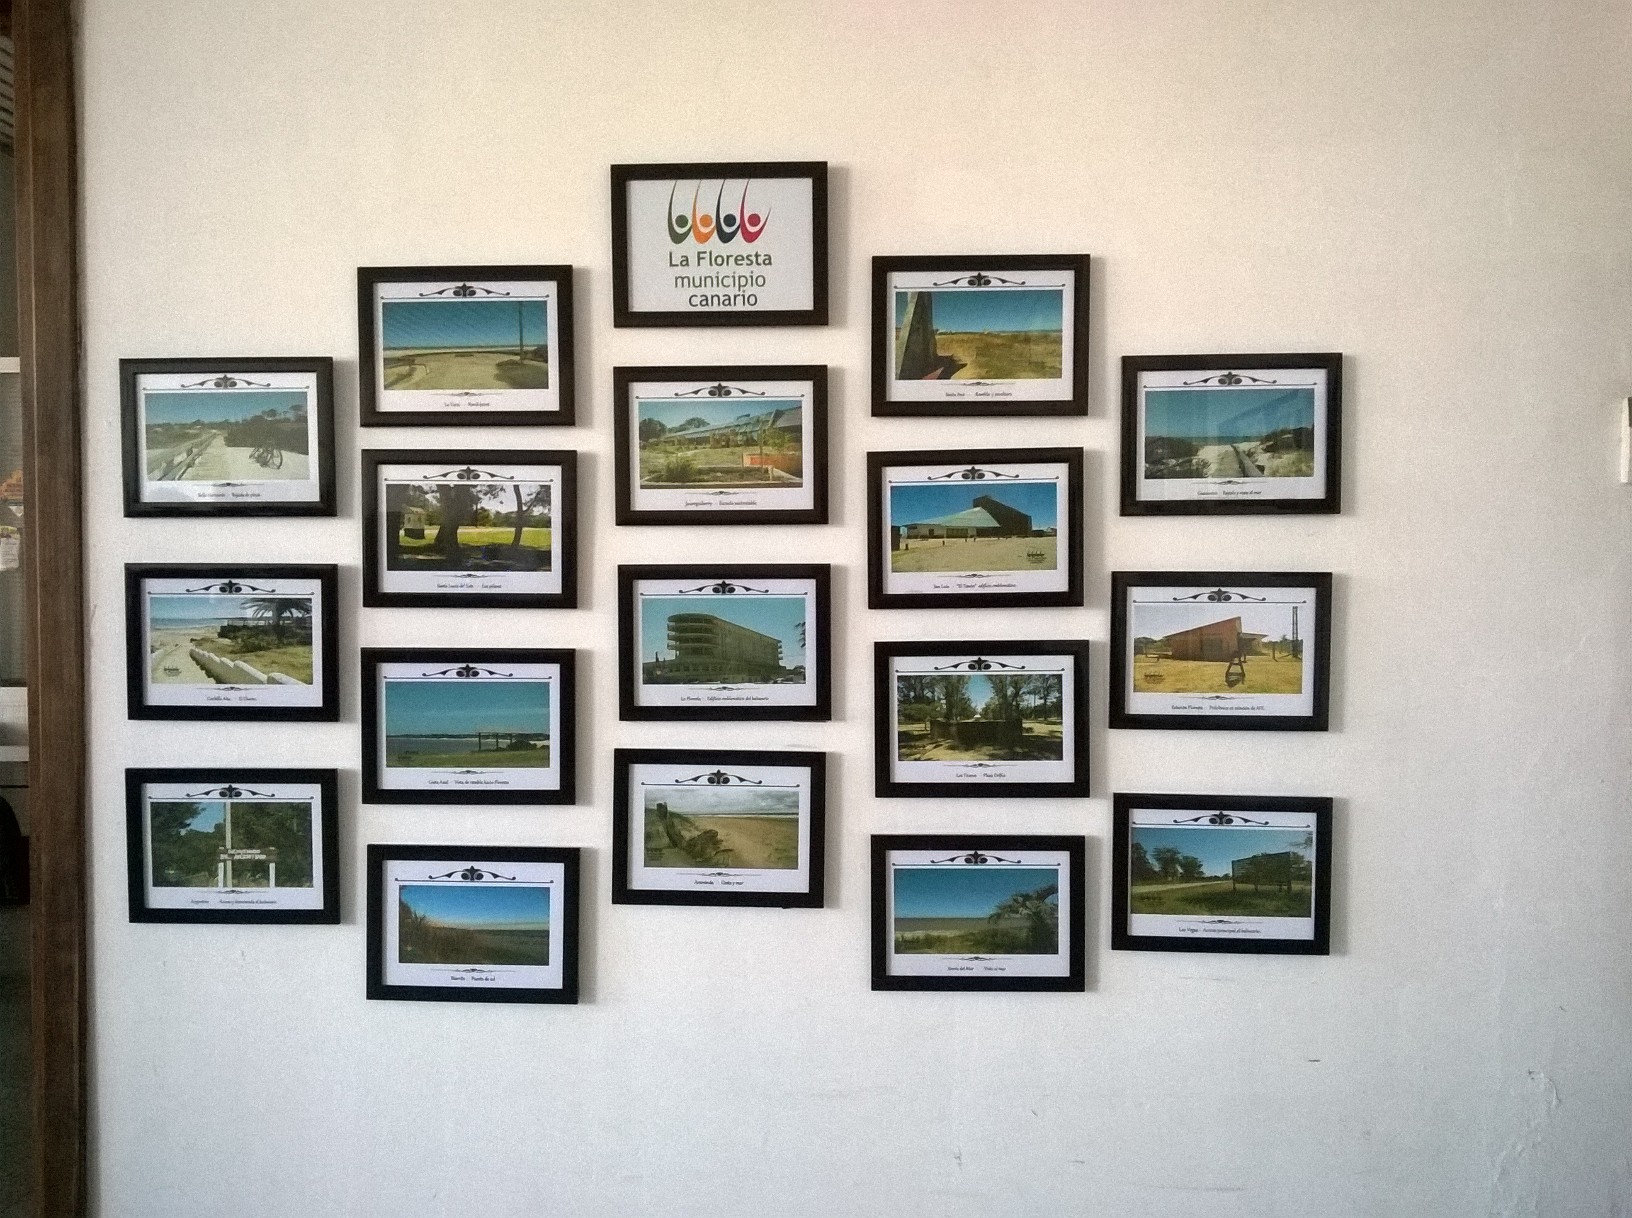 Fotos representativas de todos los balnearios de la jurisdicción.